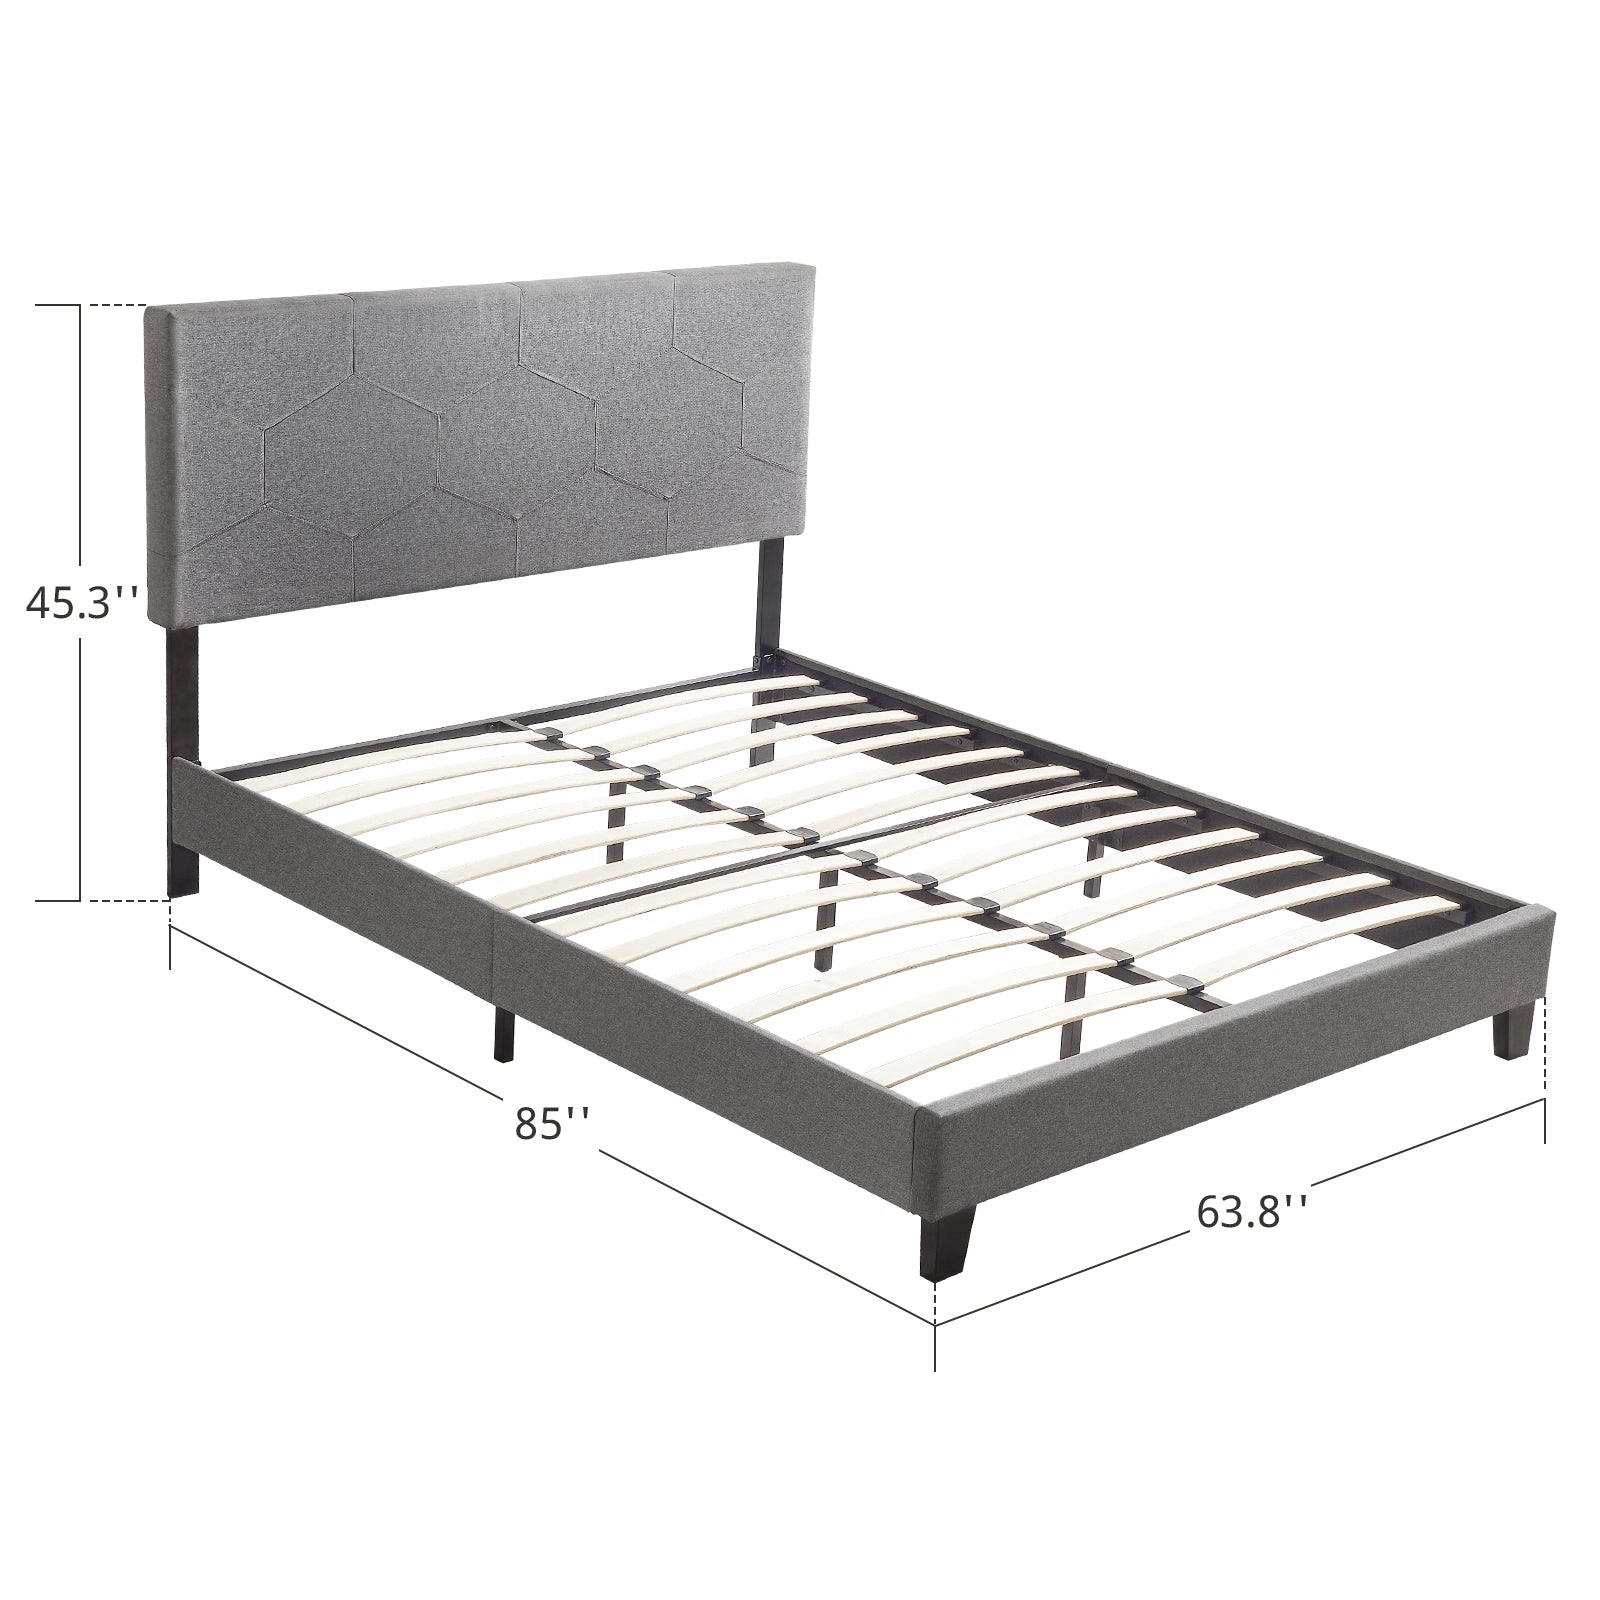 Queen Size Upholstered Platform Bed Frame ,Wood Slat Support, Easy Assembly,Grey